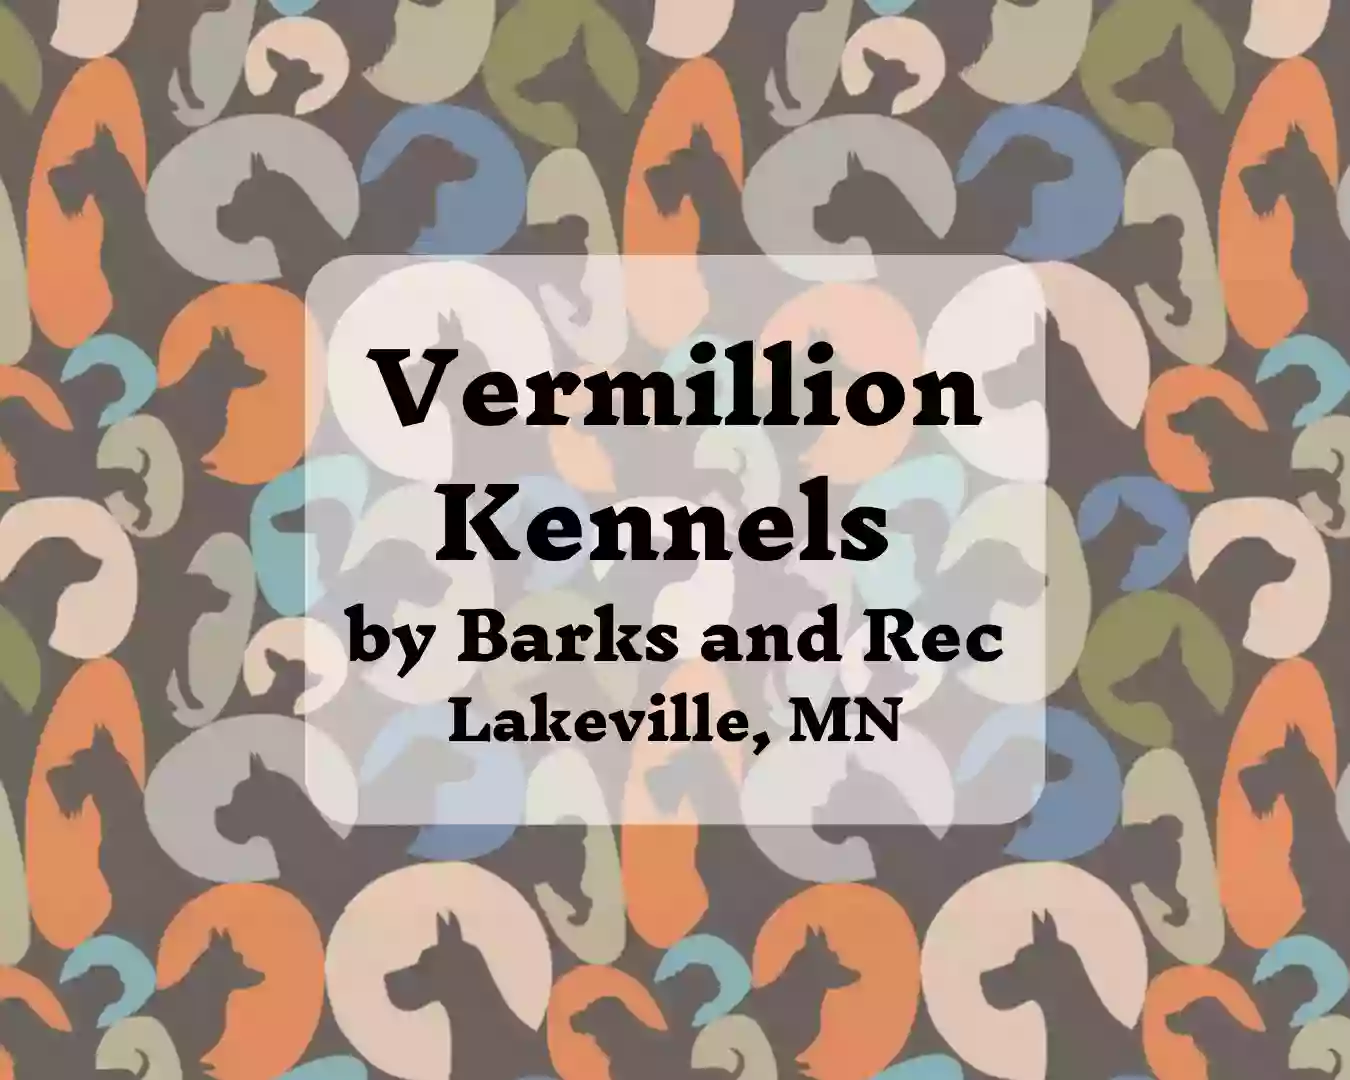 Vermillion Kennels